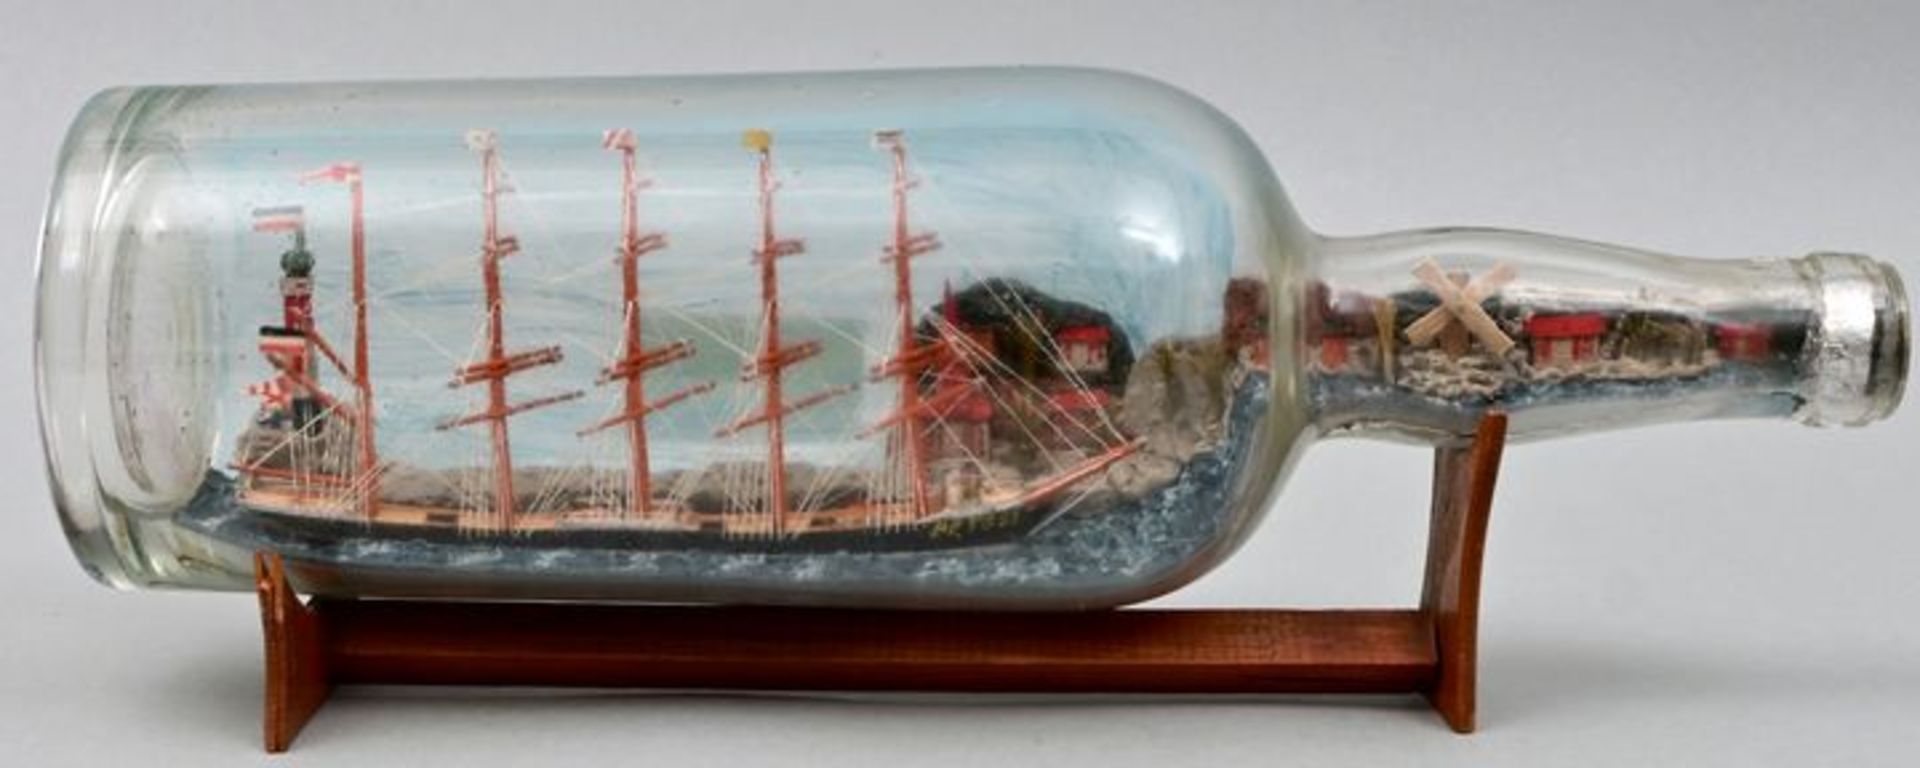 Buddelschiff / Ship in a bottle